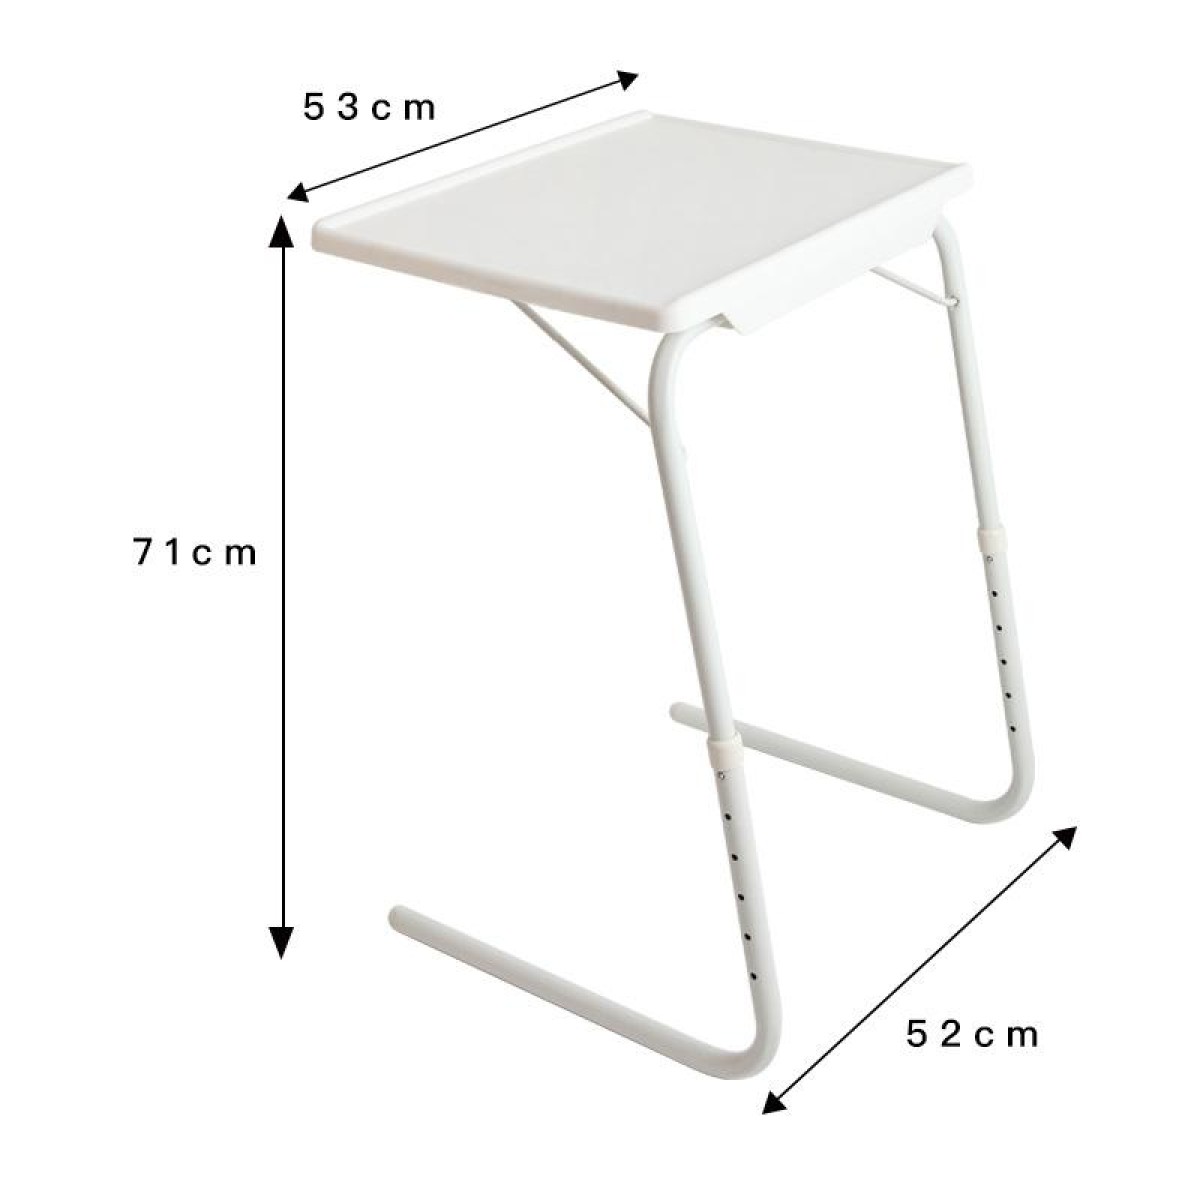 Plastic Pad Steel Tube Bracket Liftable Foldable Portable Multi-purpose Laptop Table, Adjustable Height: 52-72cm, Adjustable Angle: 30 Degrees / 60 Degrees / 90 Degrees(White)